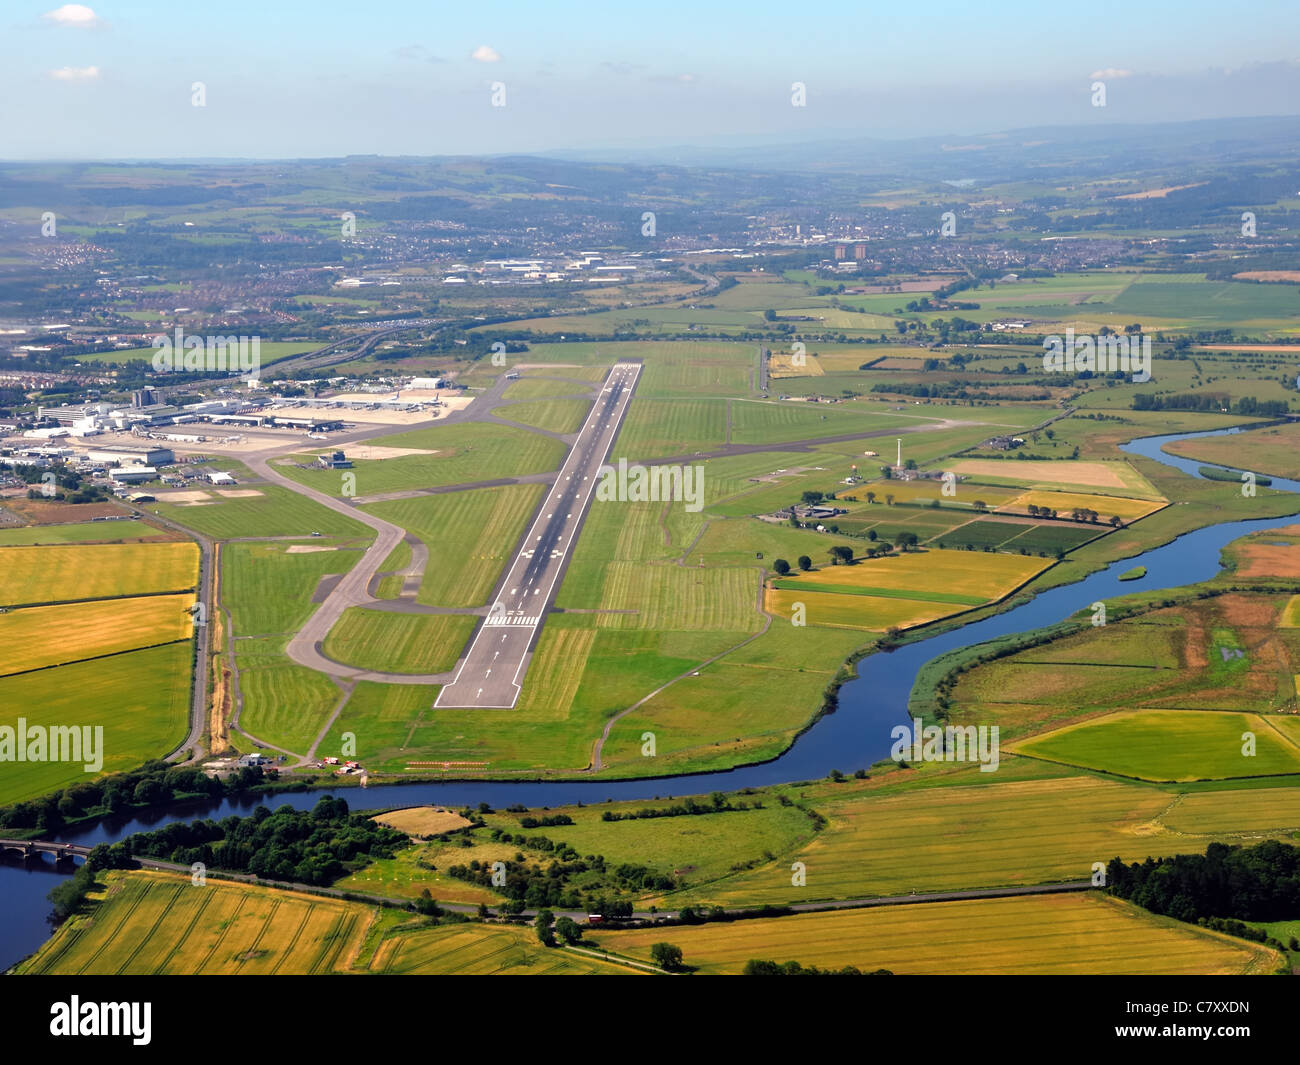 La piste principale de l'aéroport international de Glasgow et de l'eau Panier Noir, Ecosse, Royaume-Uni. Banque D'Images